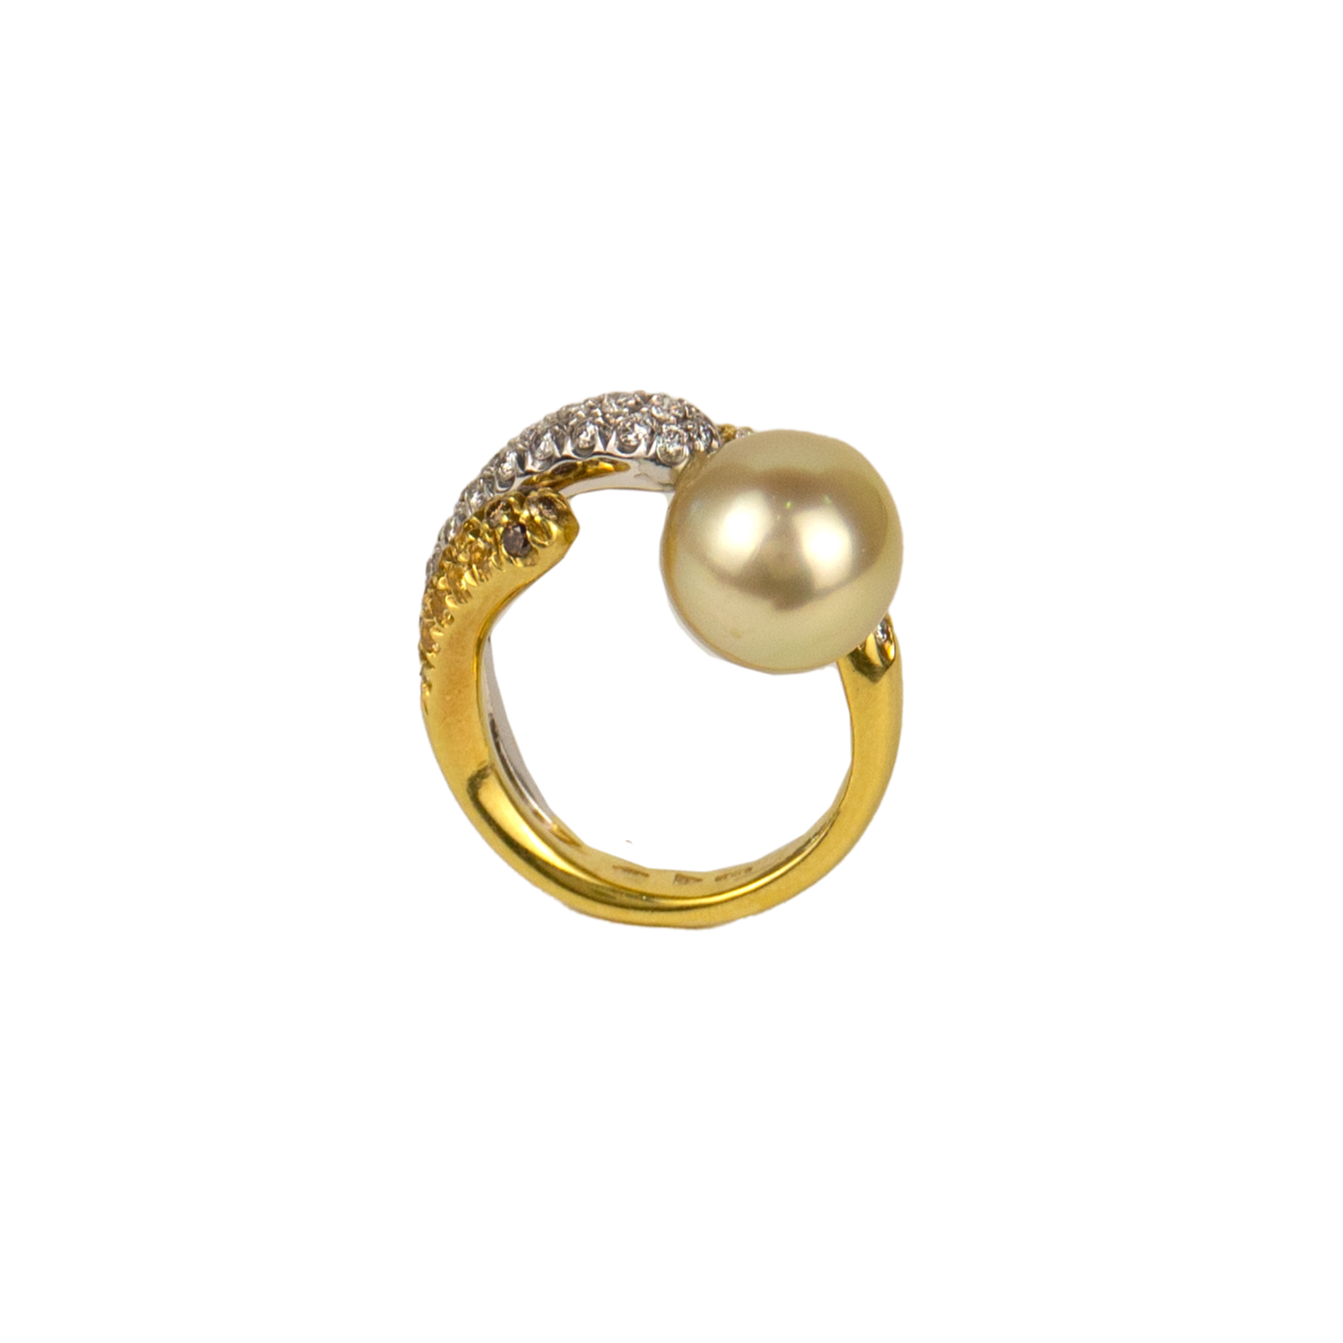 Stefan Hafner 18K Yellow & White Gold Diamond & Pearl Ring